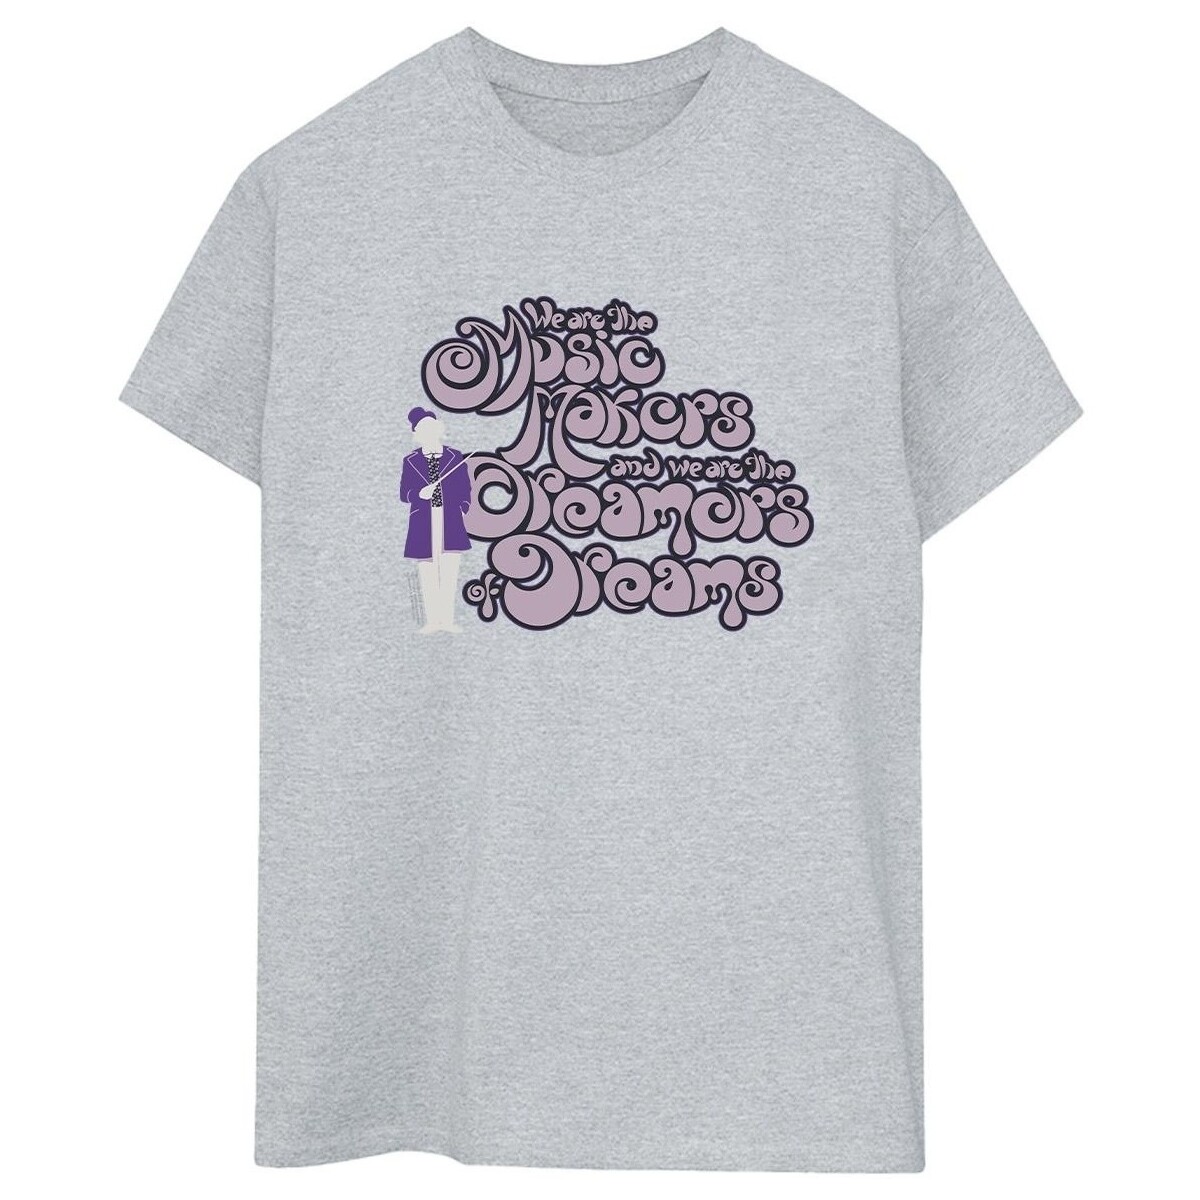 textil Mujer Camisetas manga larga Willy Wonka Dreamers Text Gris